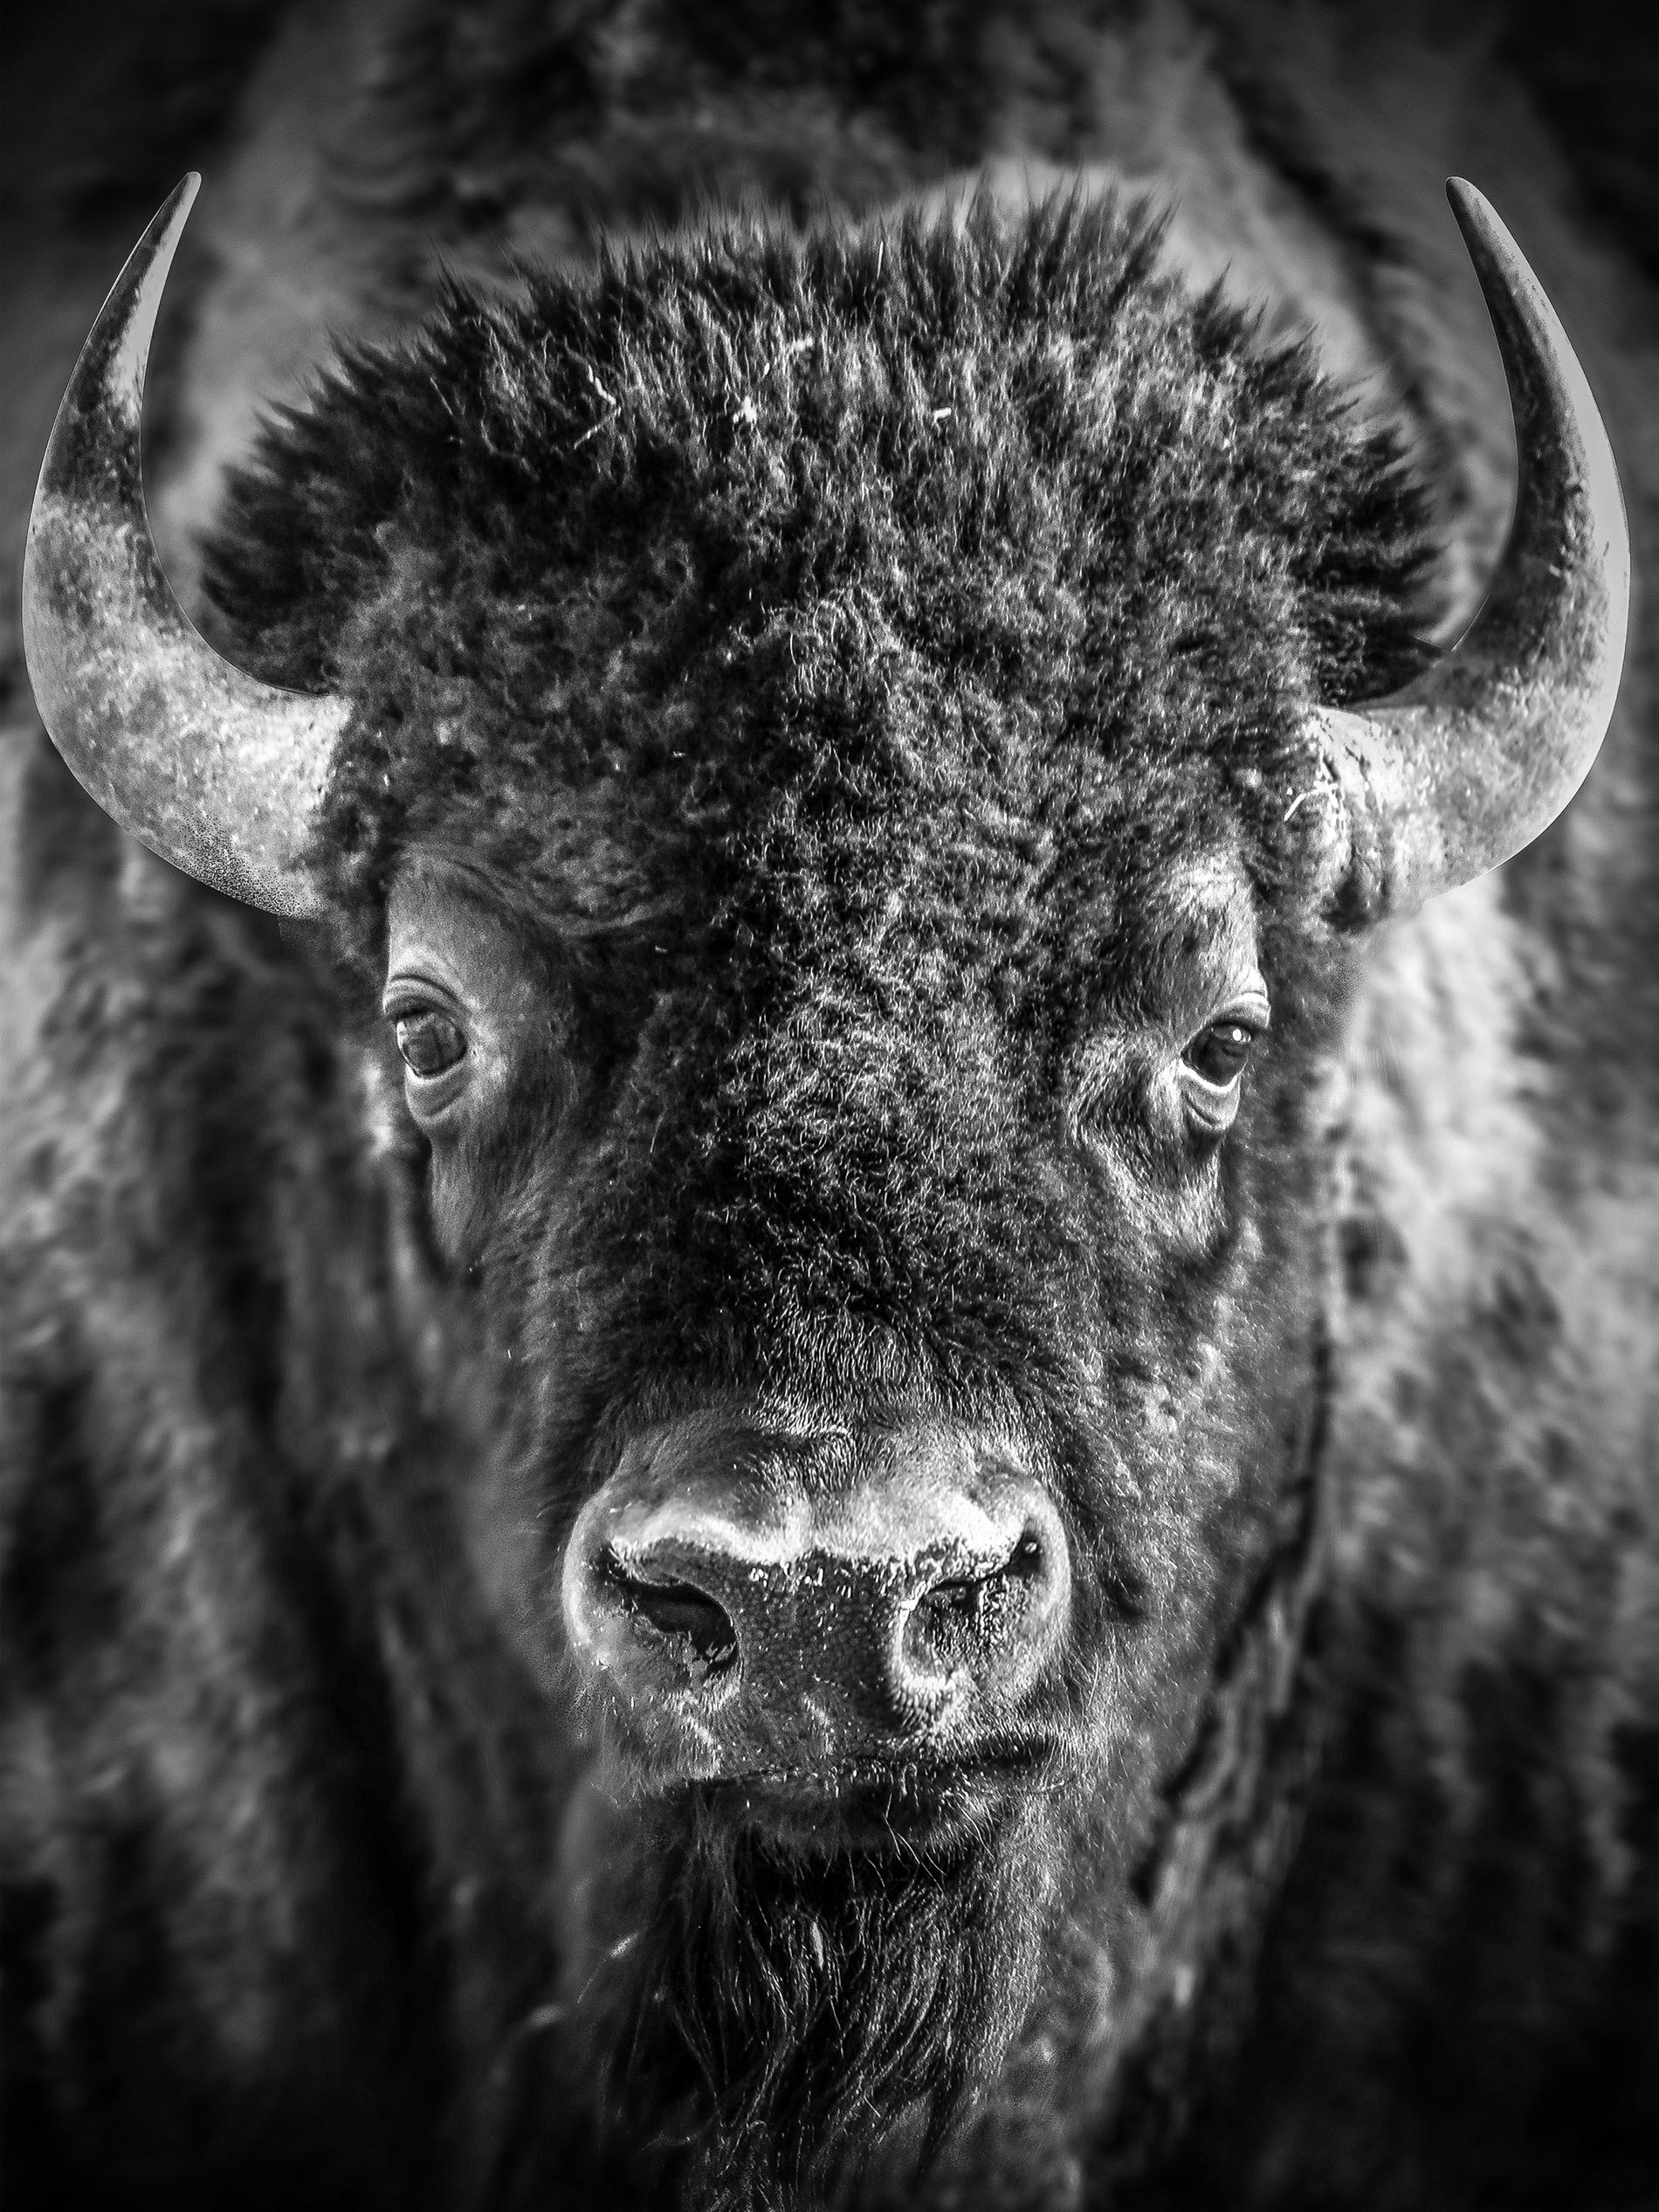 Black and White Photograph Shane Russeck -  "Bison Portrait" - Photographie en noir et blanc 40x28, Buffalo, Wyoming, non signée